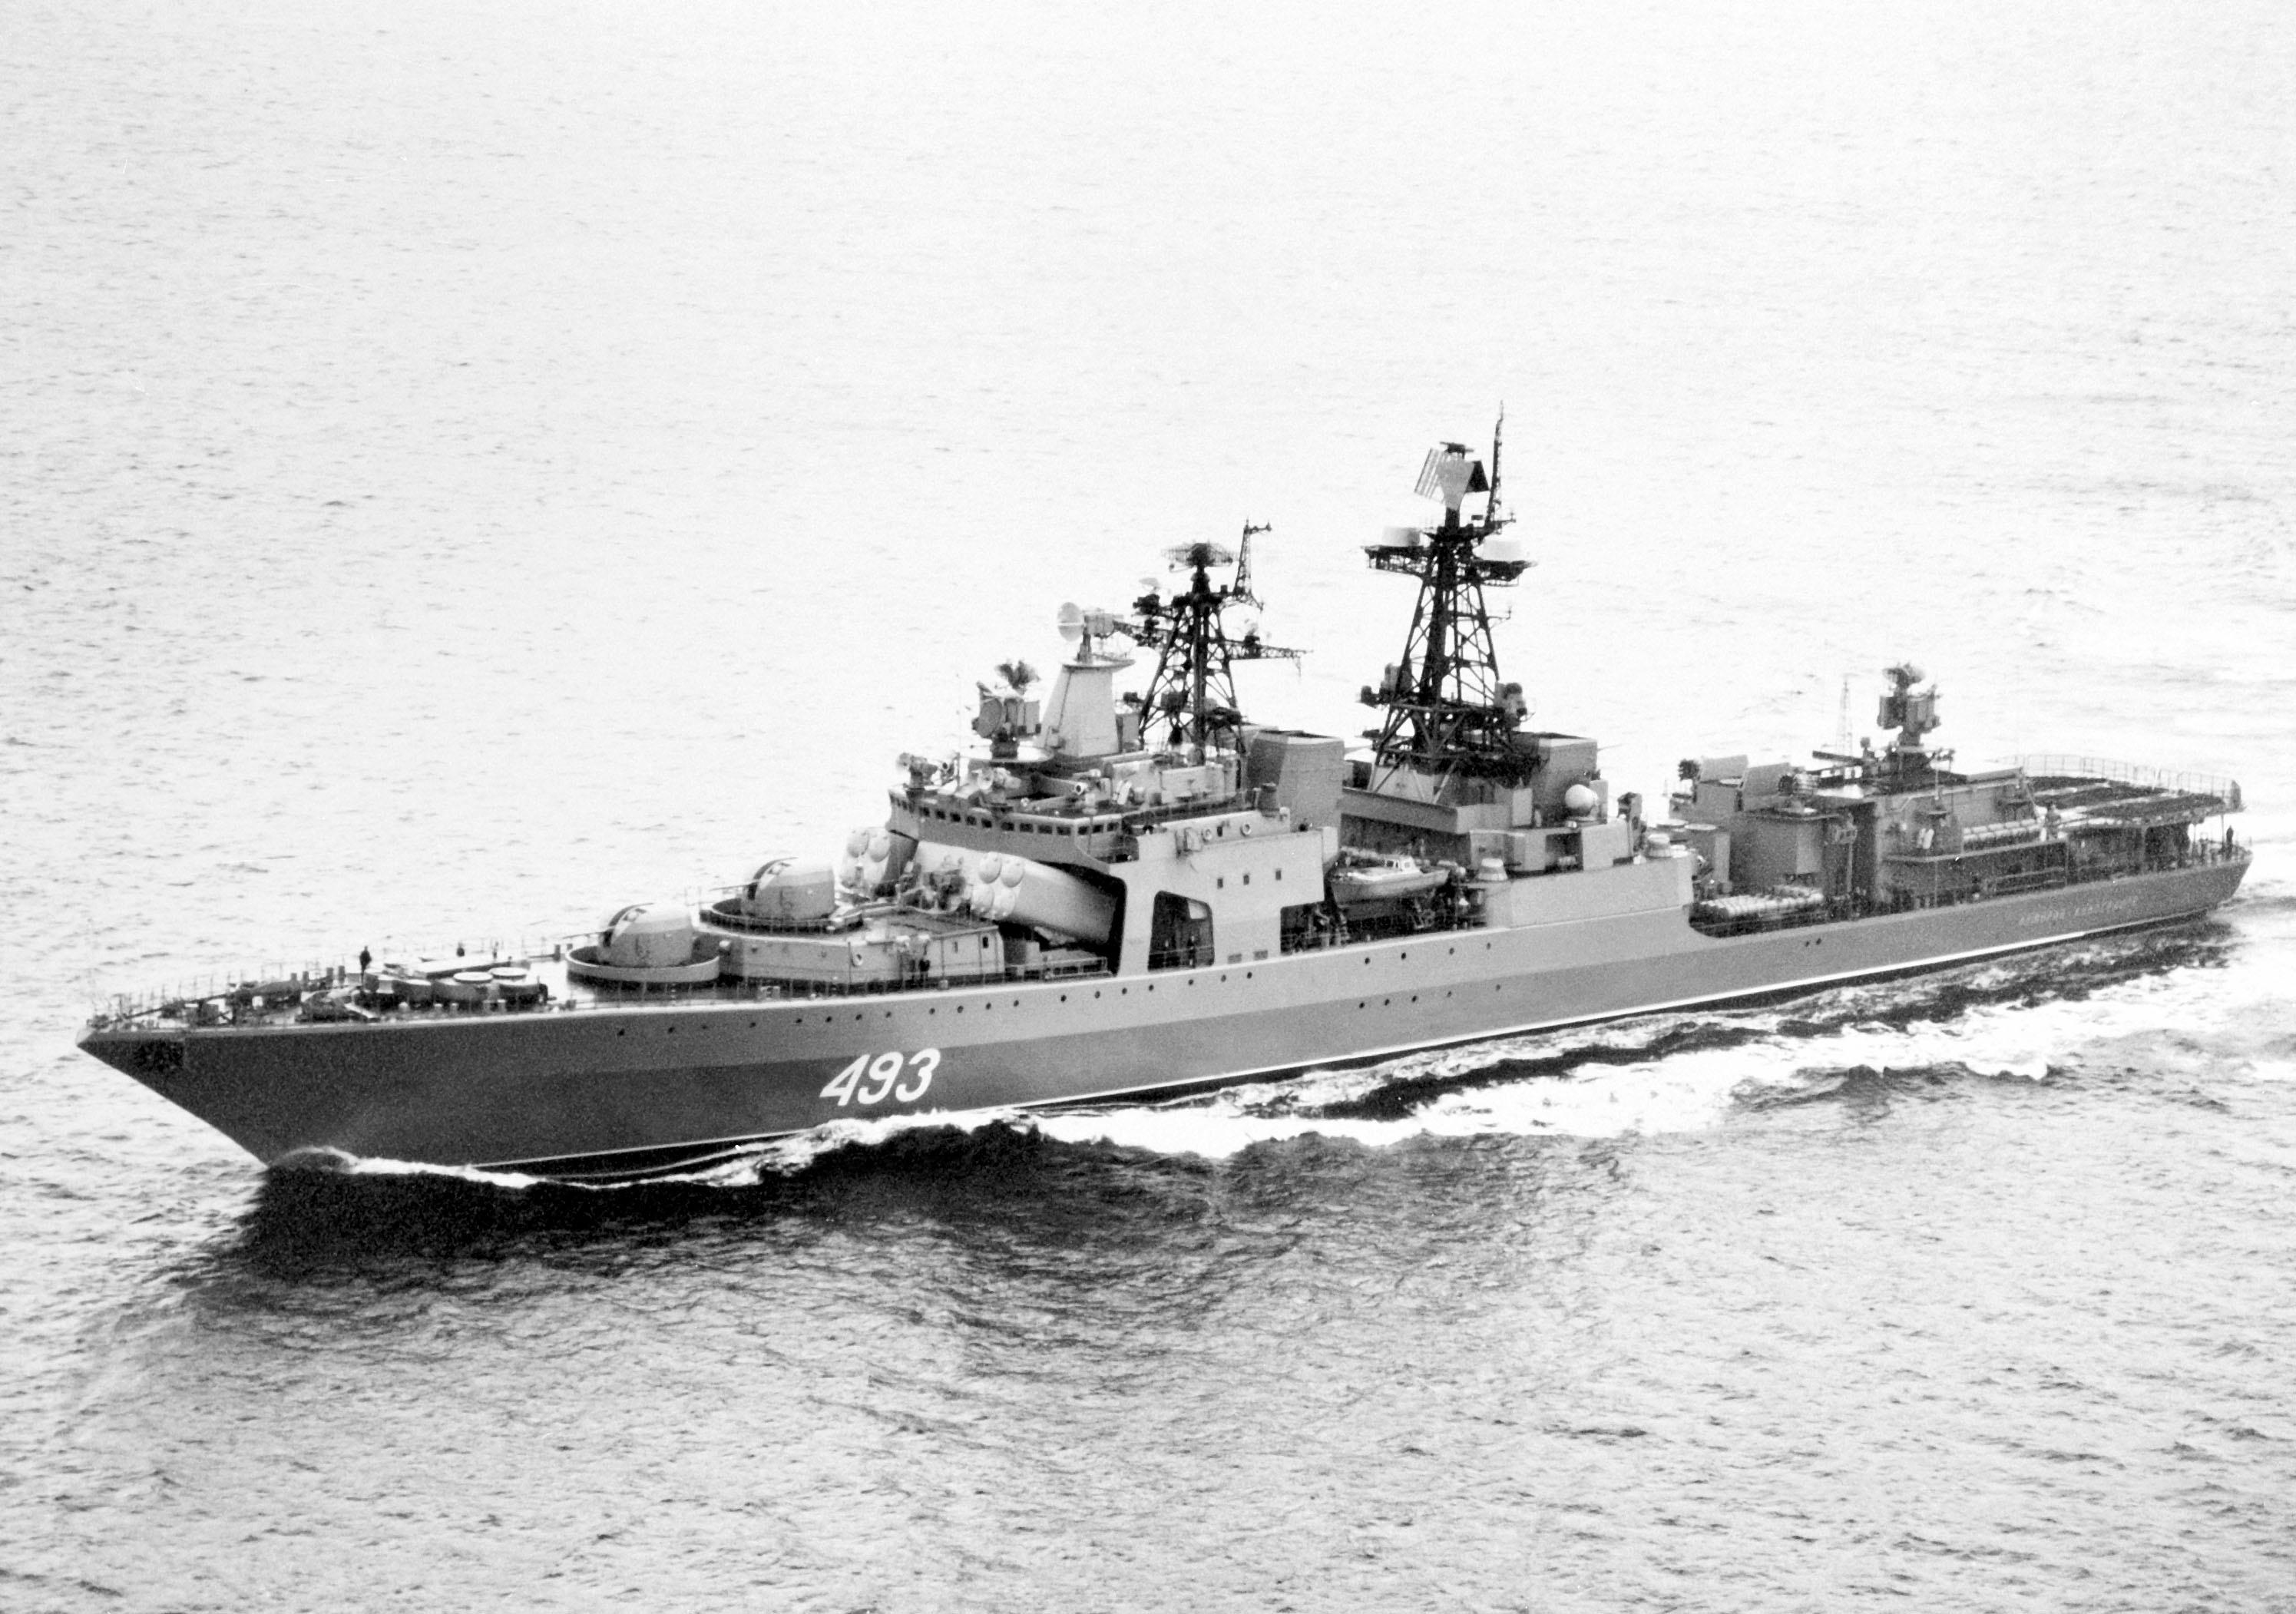 猎人号驱逐舰苏联图片